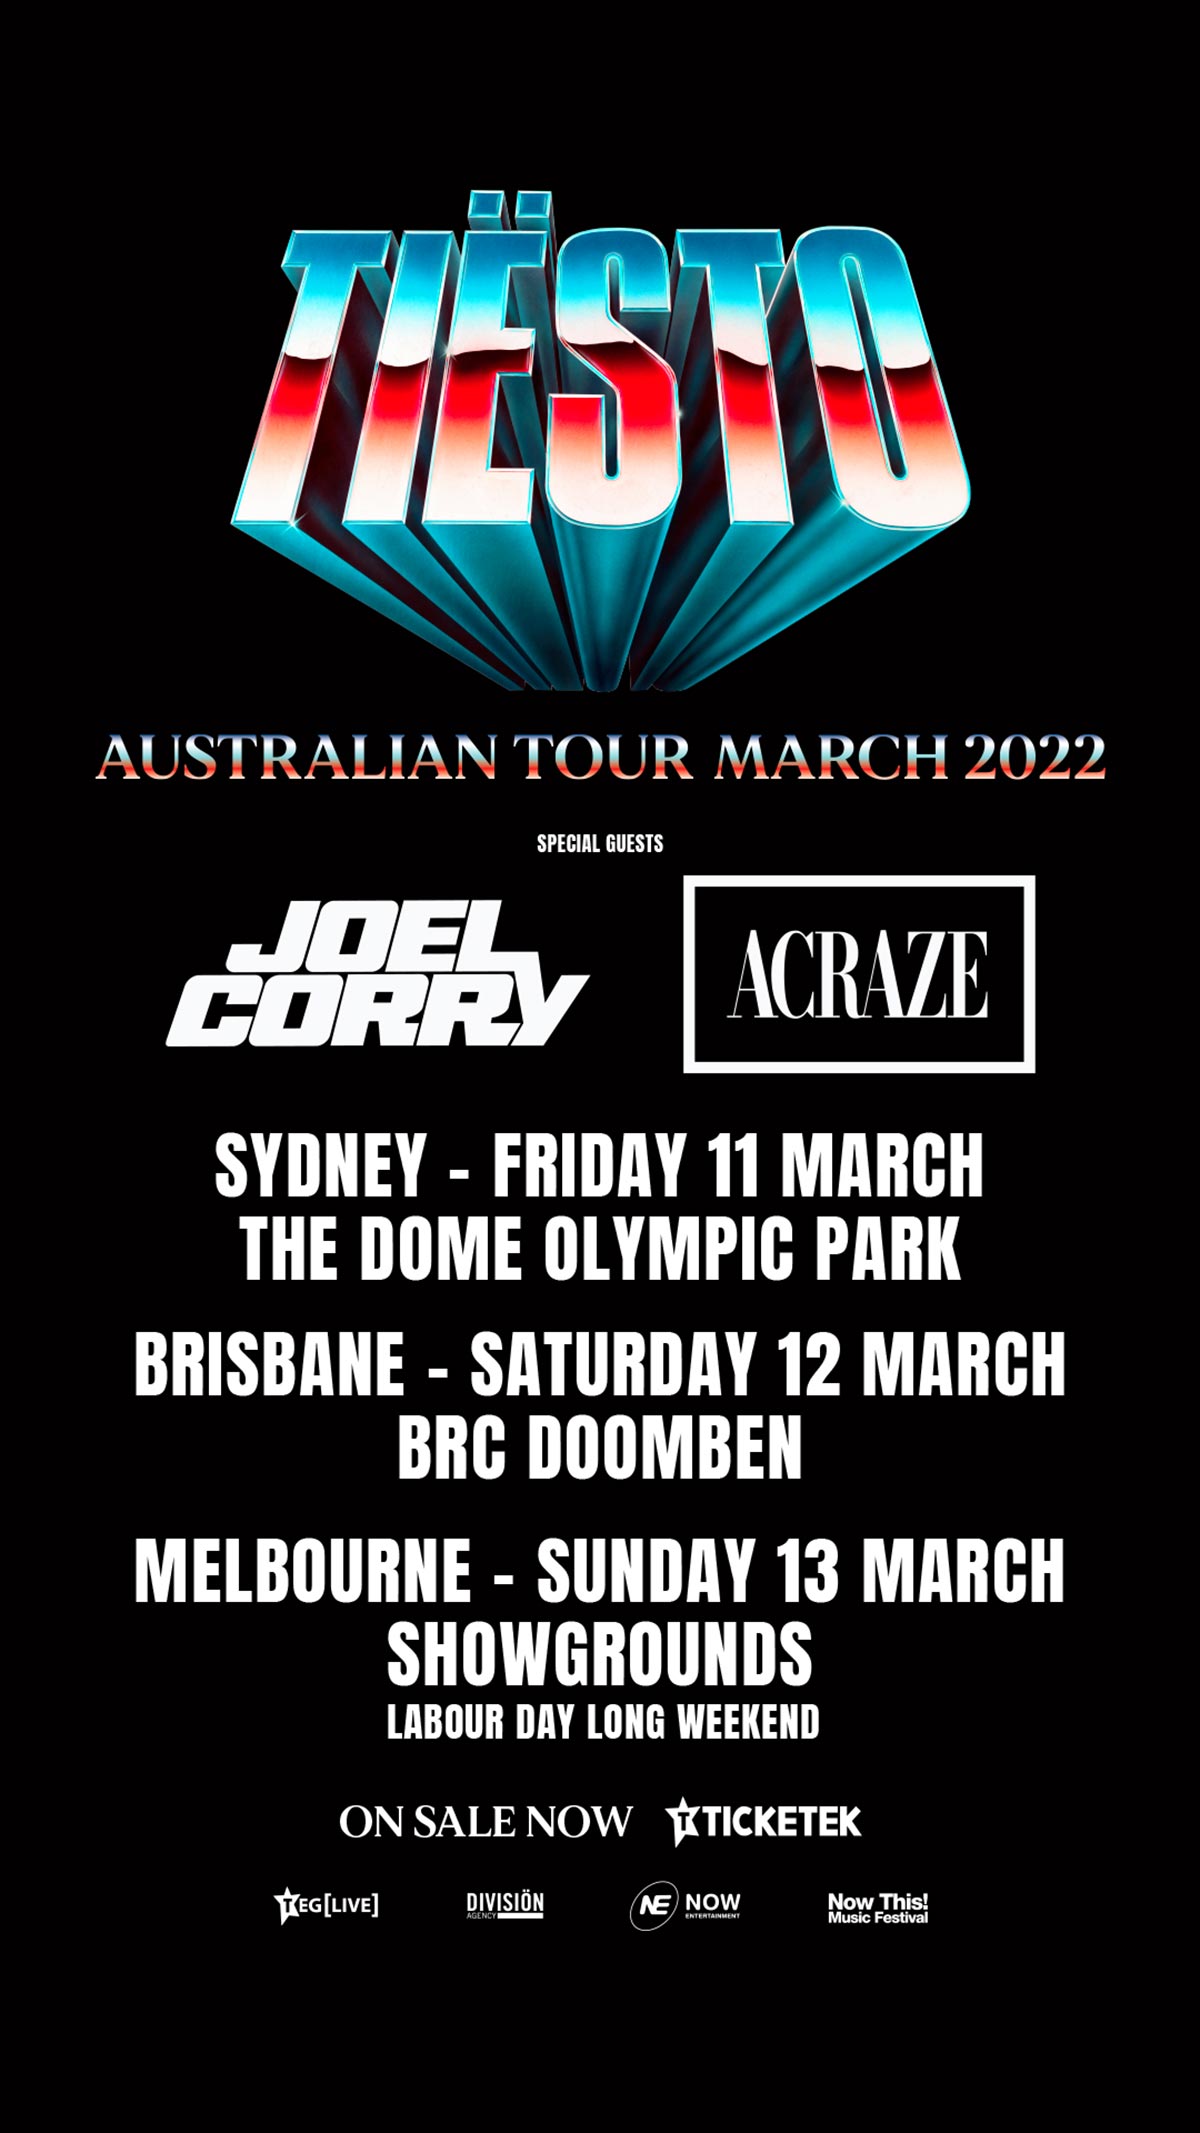 tiesto-australian-tour-2022-poster-oz-edm